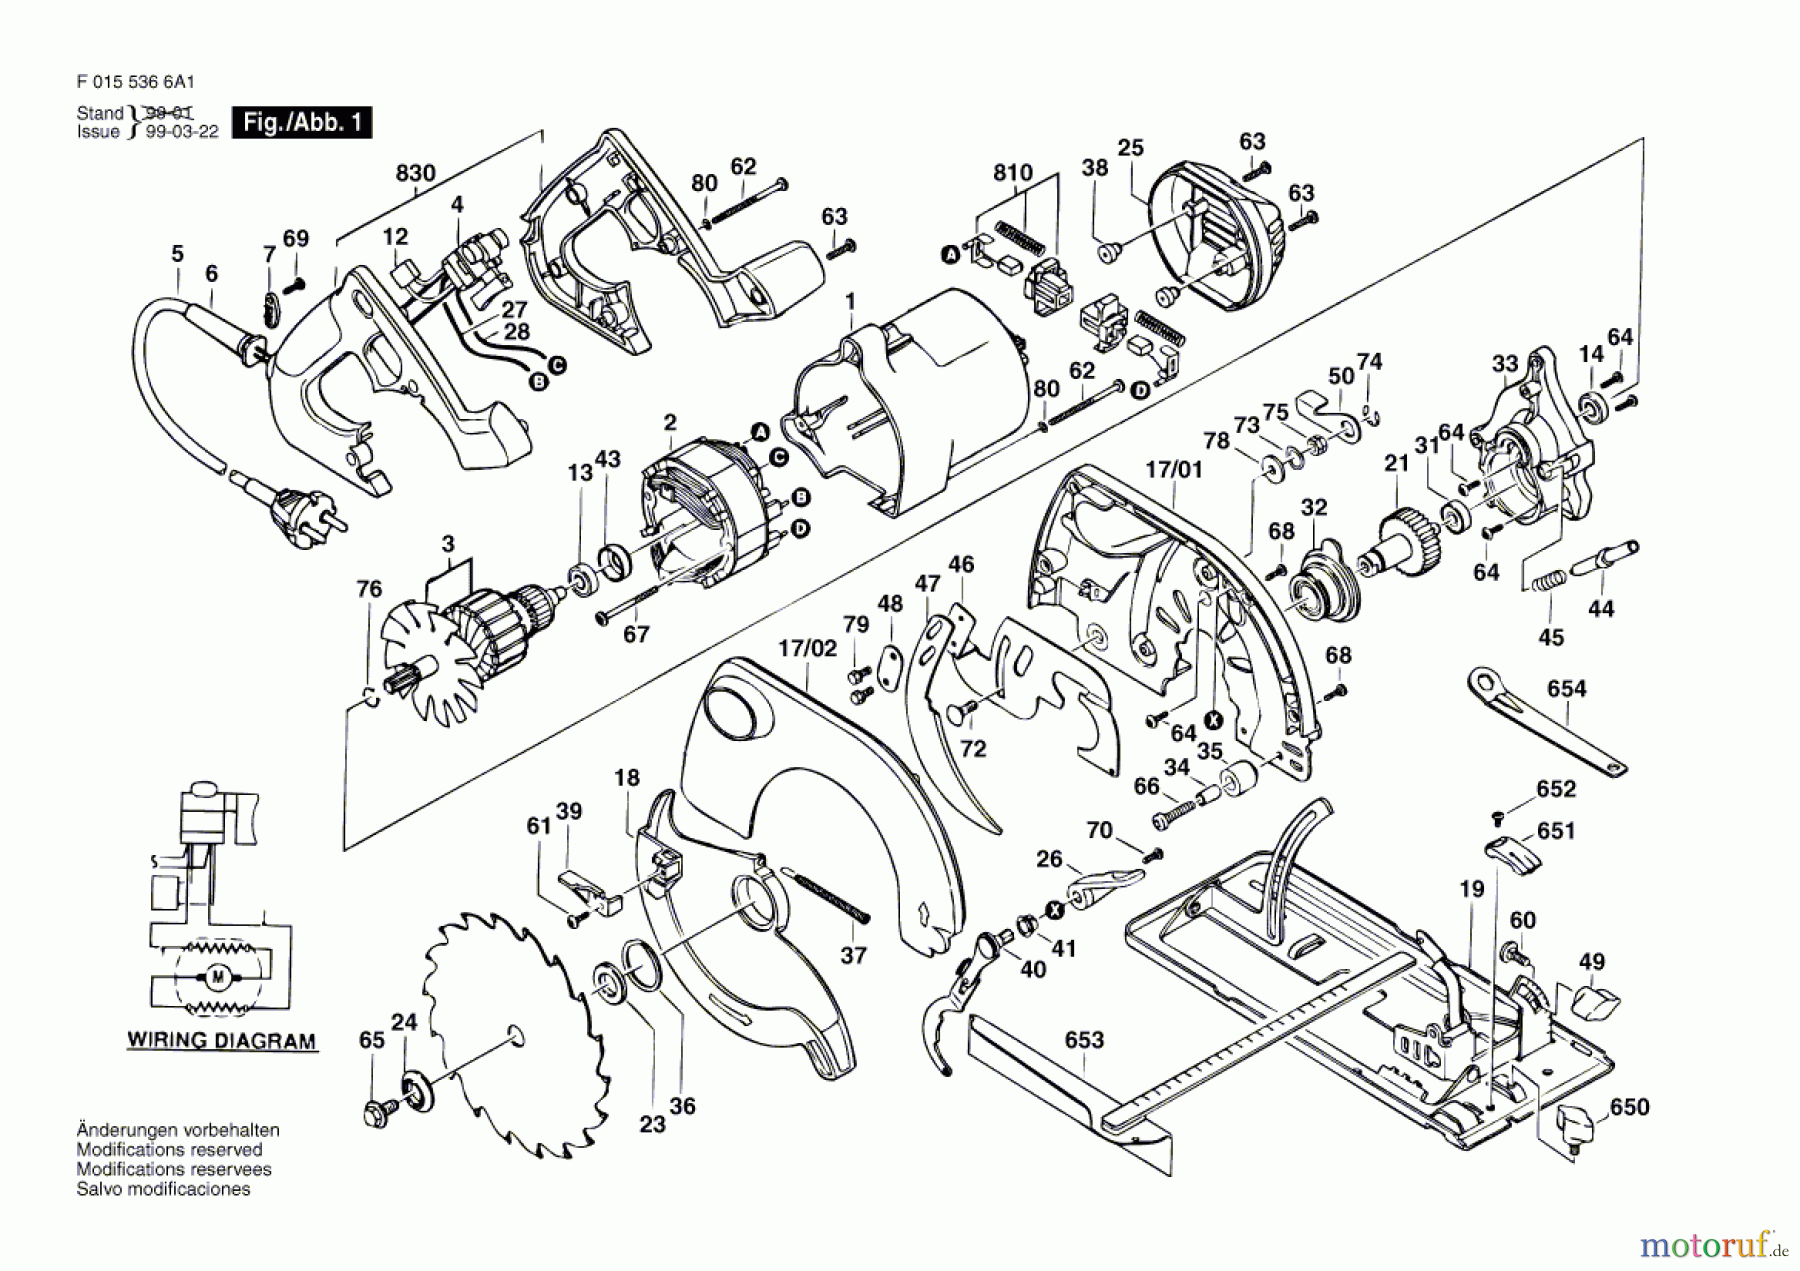  Bosch Werkzeug Kreissäge 5366 Seite 1